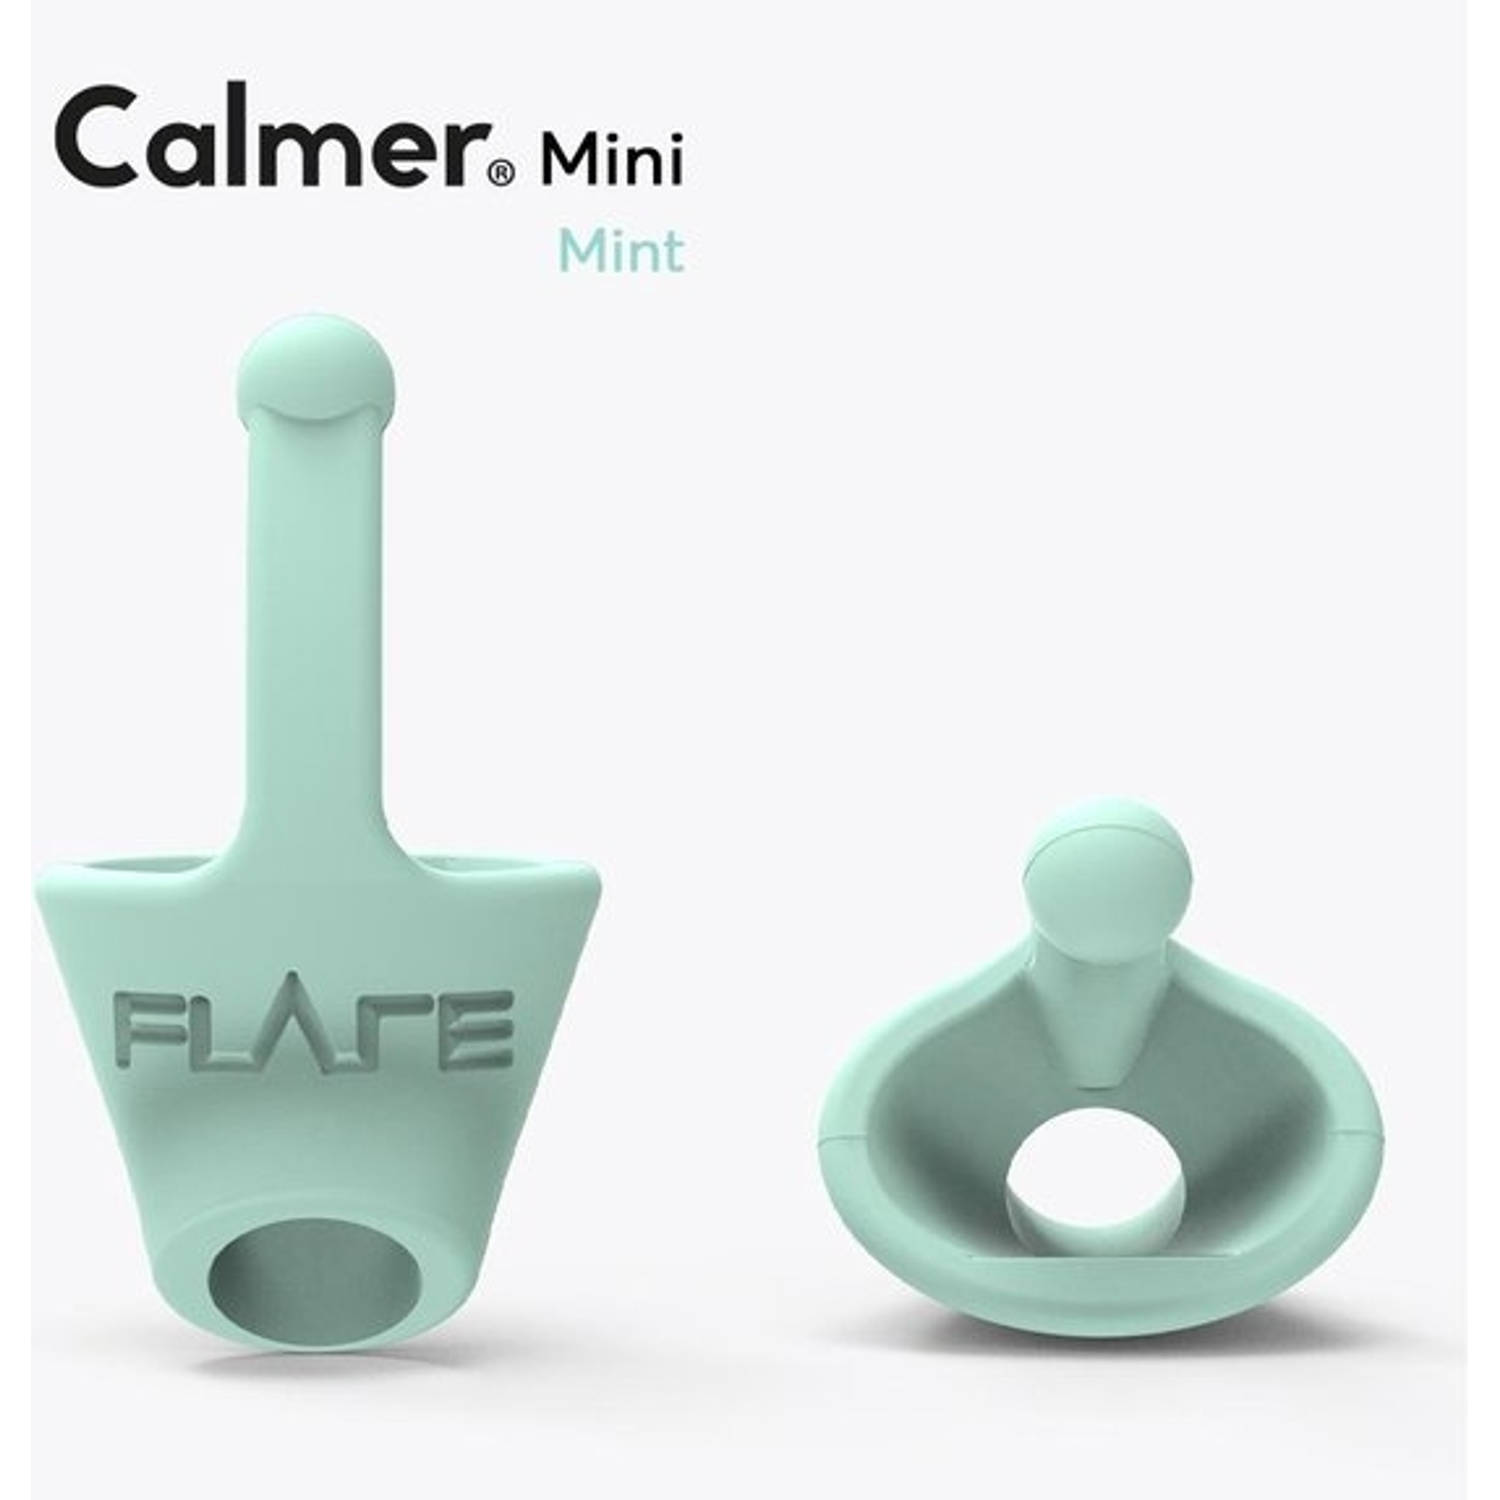 CALMER® mini Mint Een klein oordopje dat stress vermindert verhoogt geluidskwaliteit Flare Audio